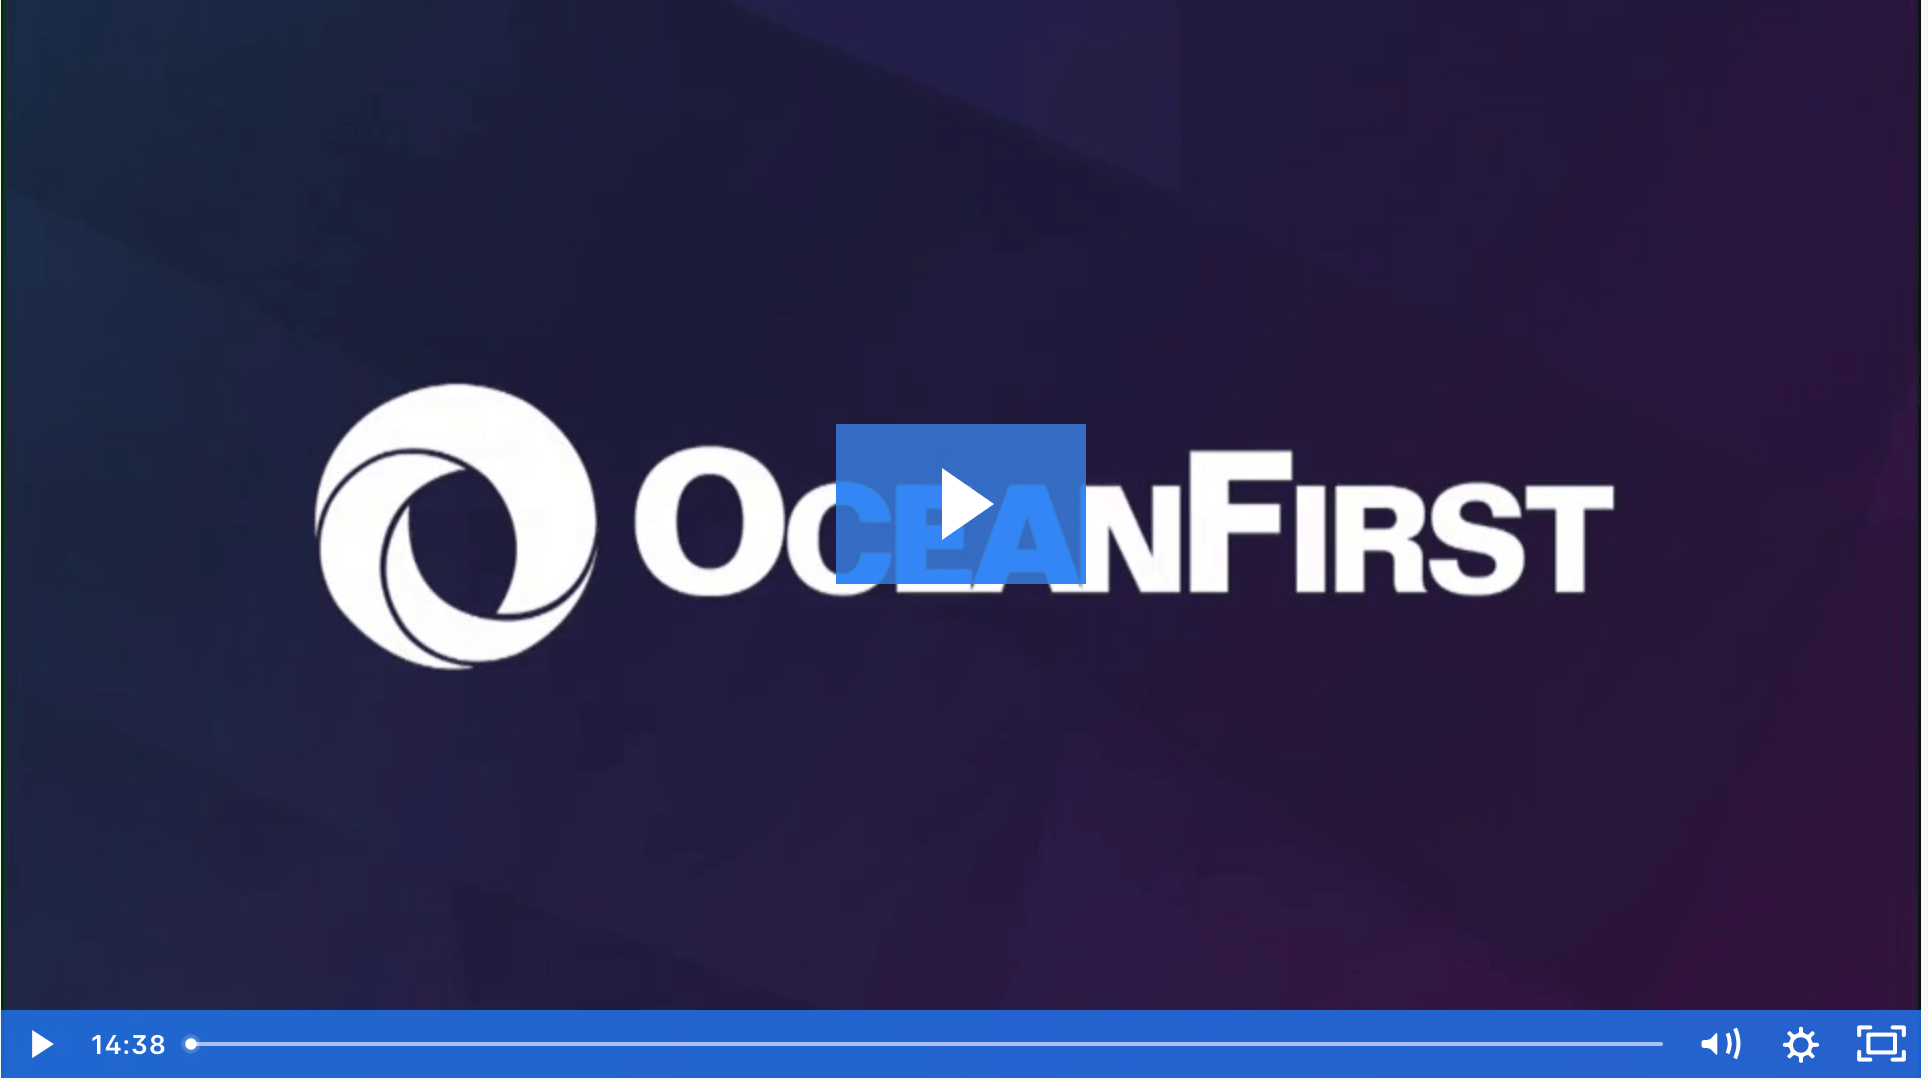 OceanFirst logo